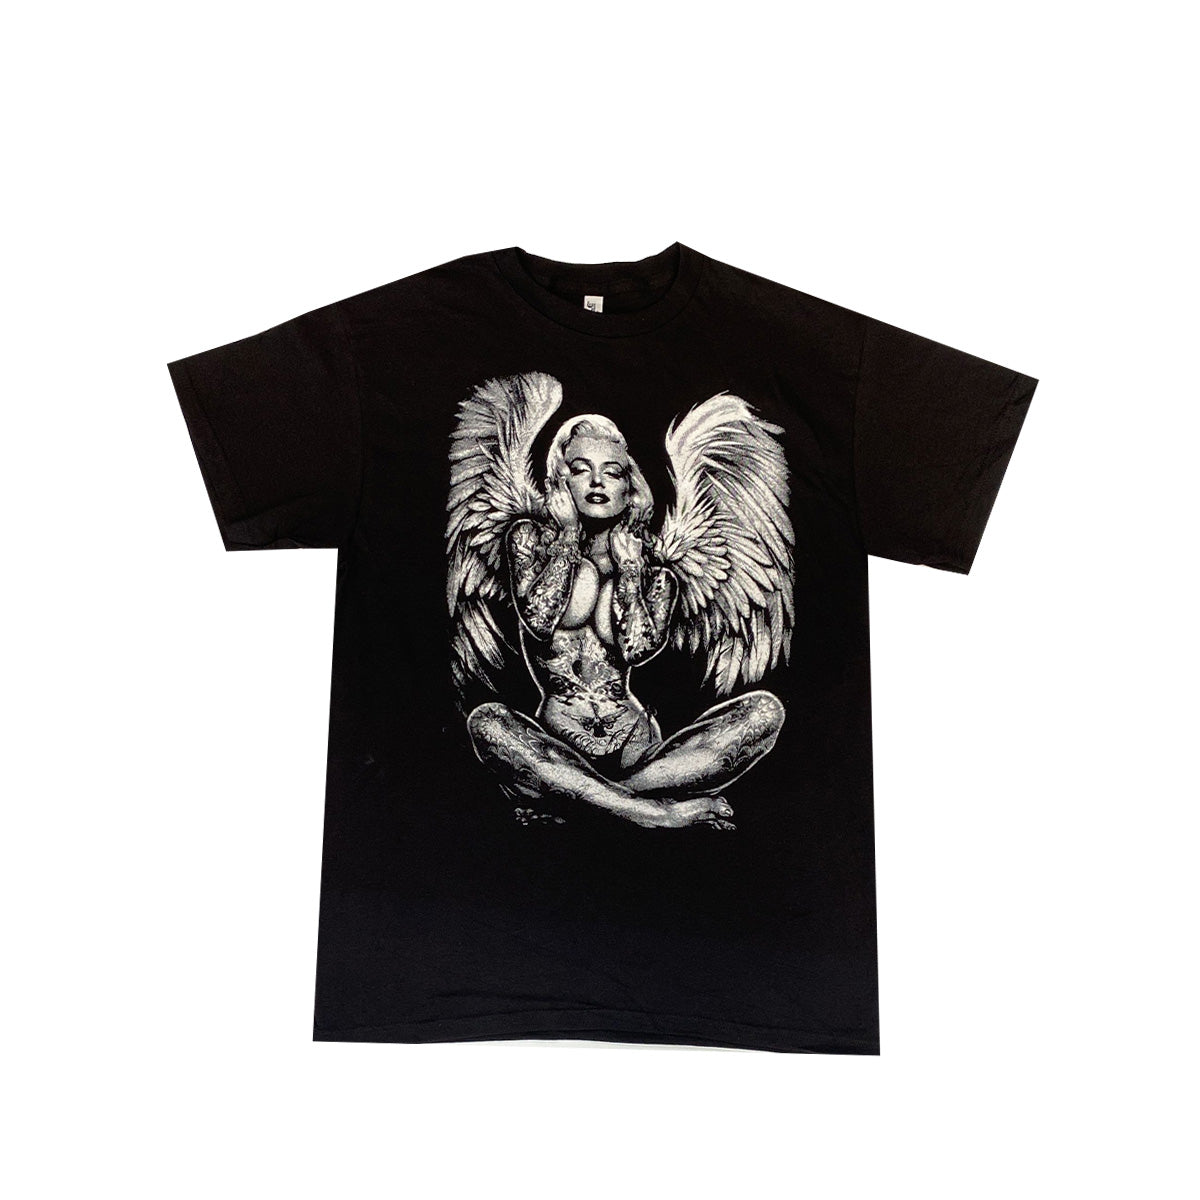 Marilyn Angel 100% Cotton T-Shirt, Pack of 5 Units, M, L, XL, XXL, XXXL